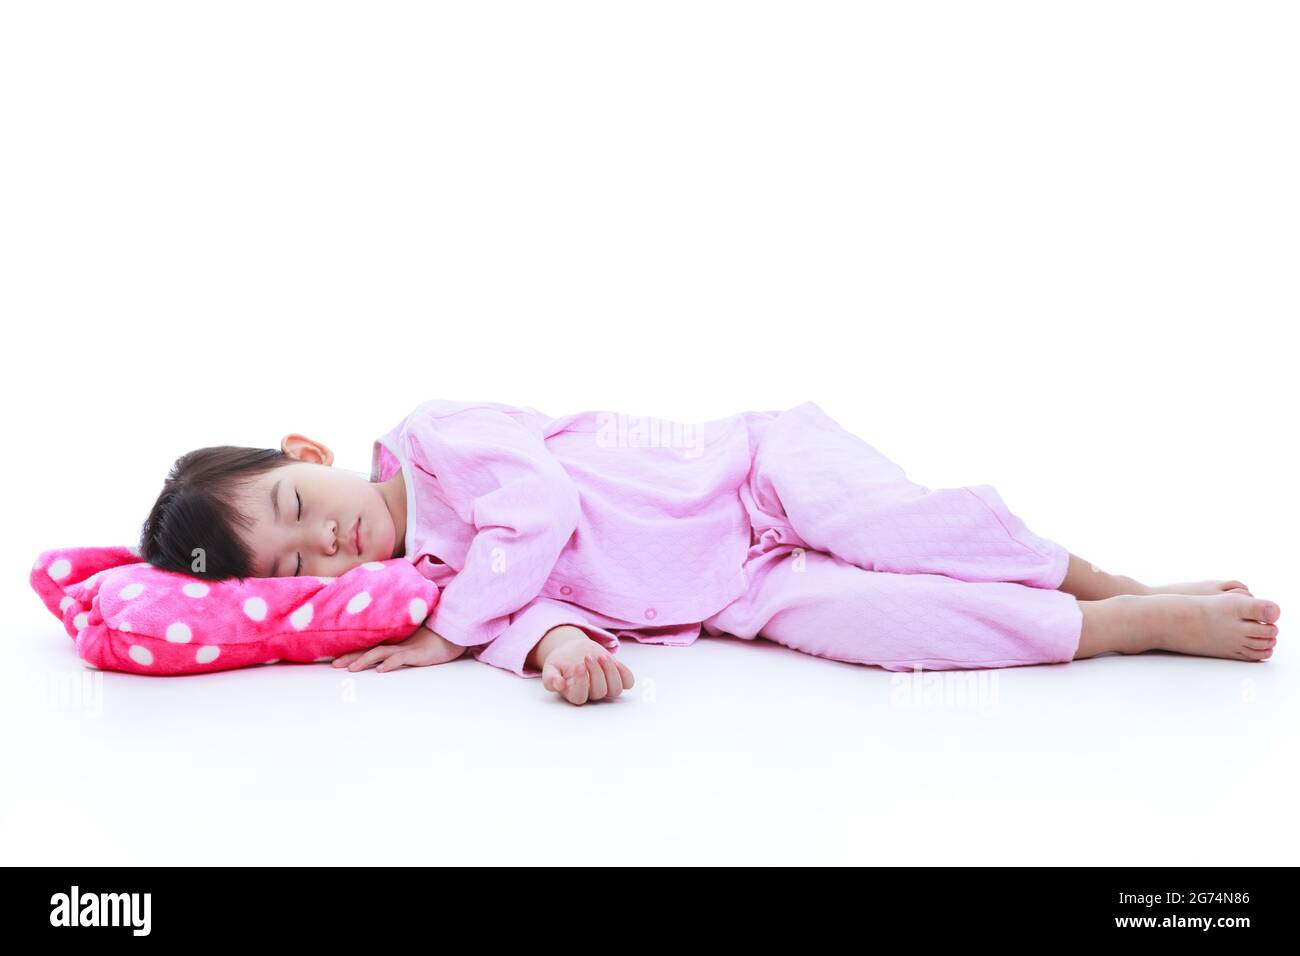 Asiático Niño Pequeño De 3 a 4 Años En Pijama Durmiendo / Tomando